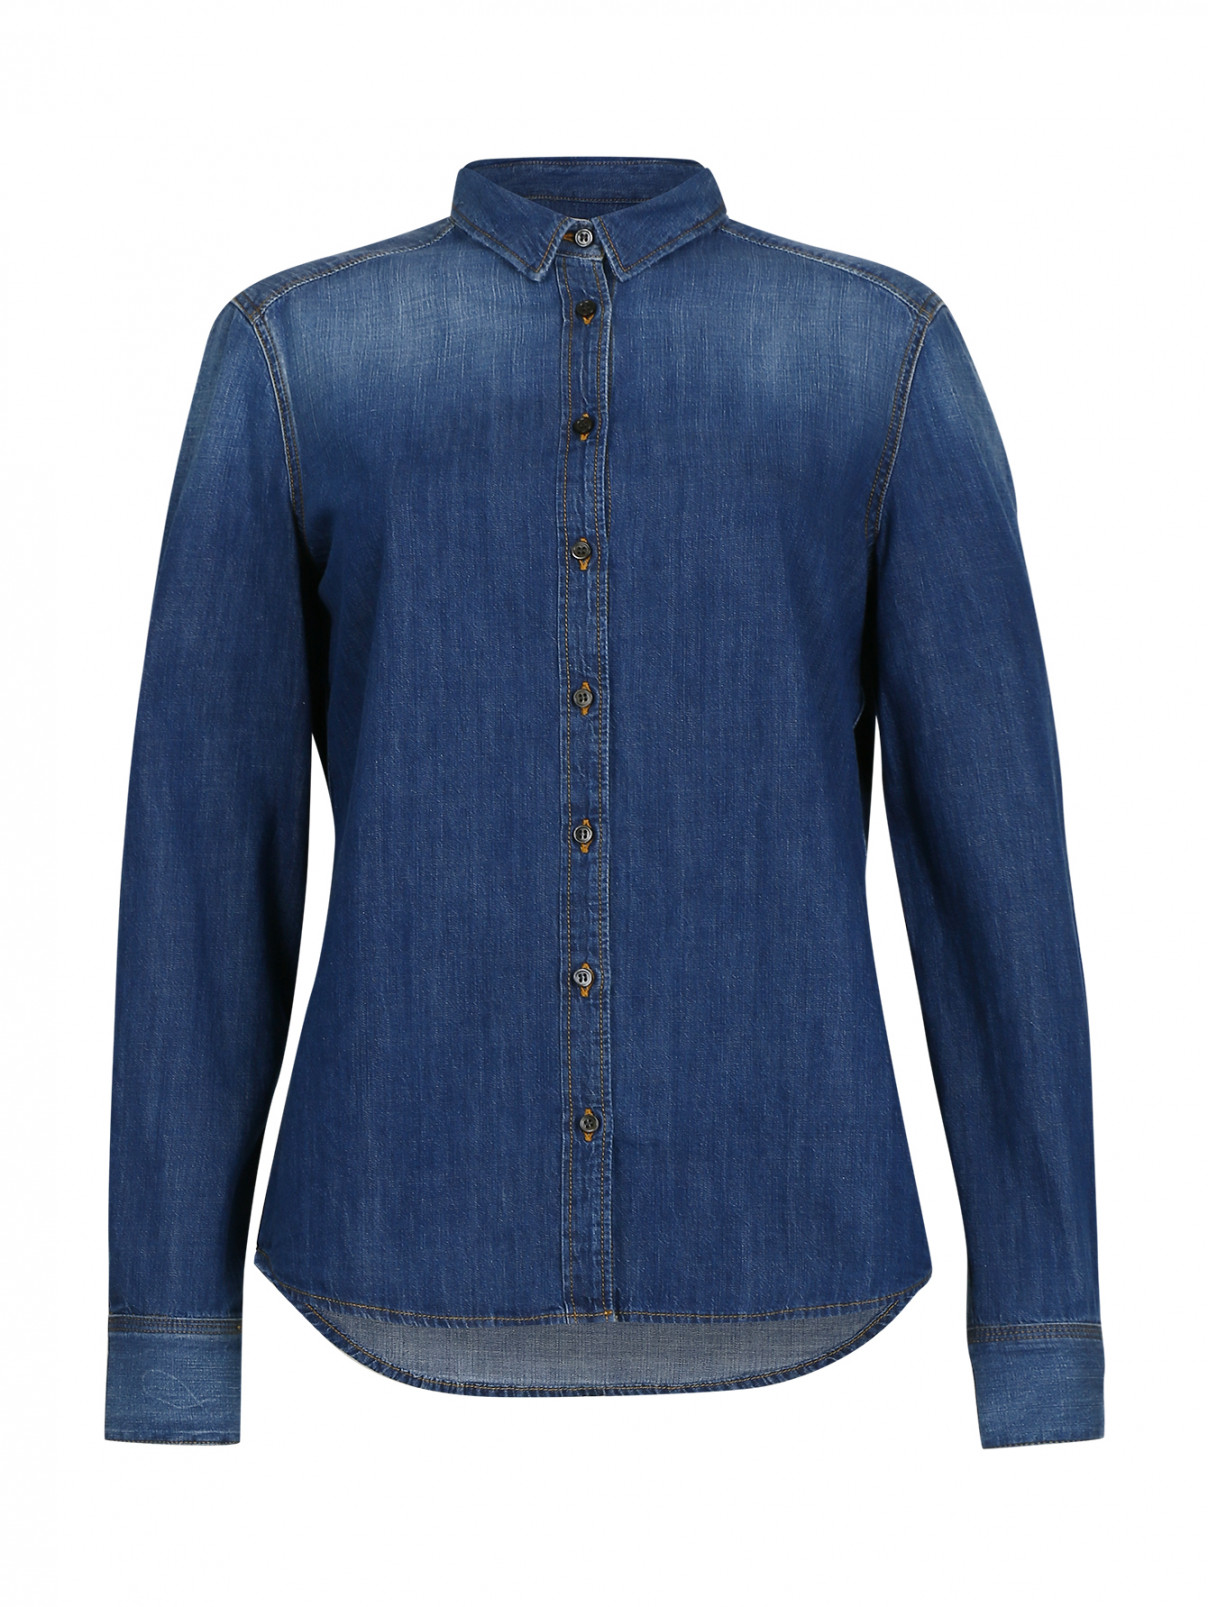 Джинсовая рубашка на пуговицах CLOSED  –  Общий вид  – Цвет:  Синий